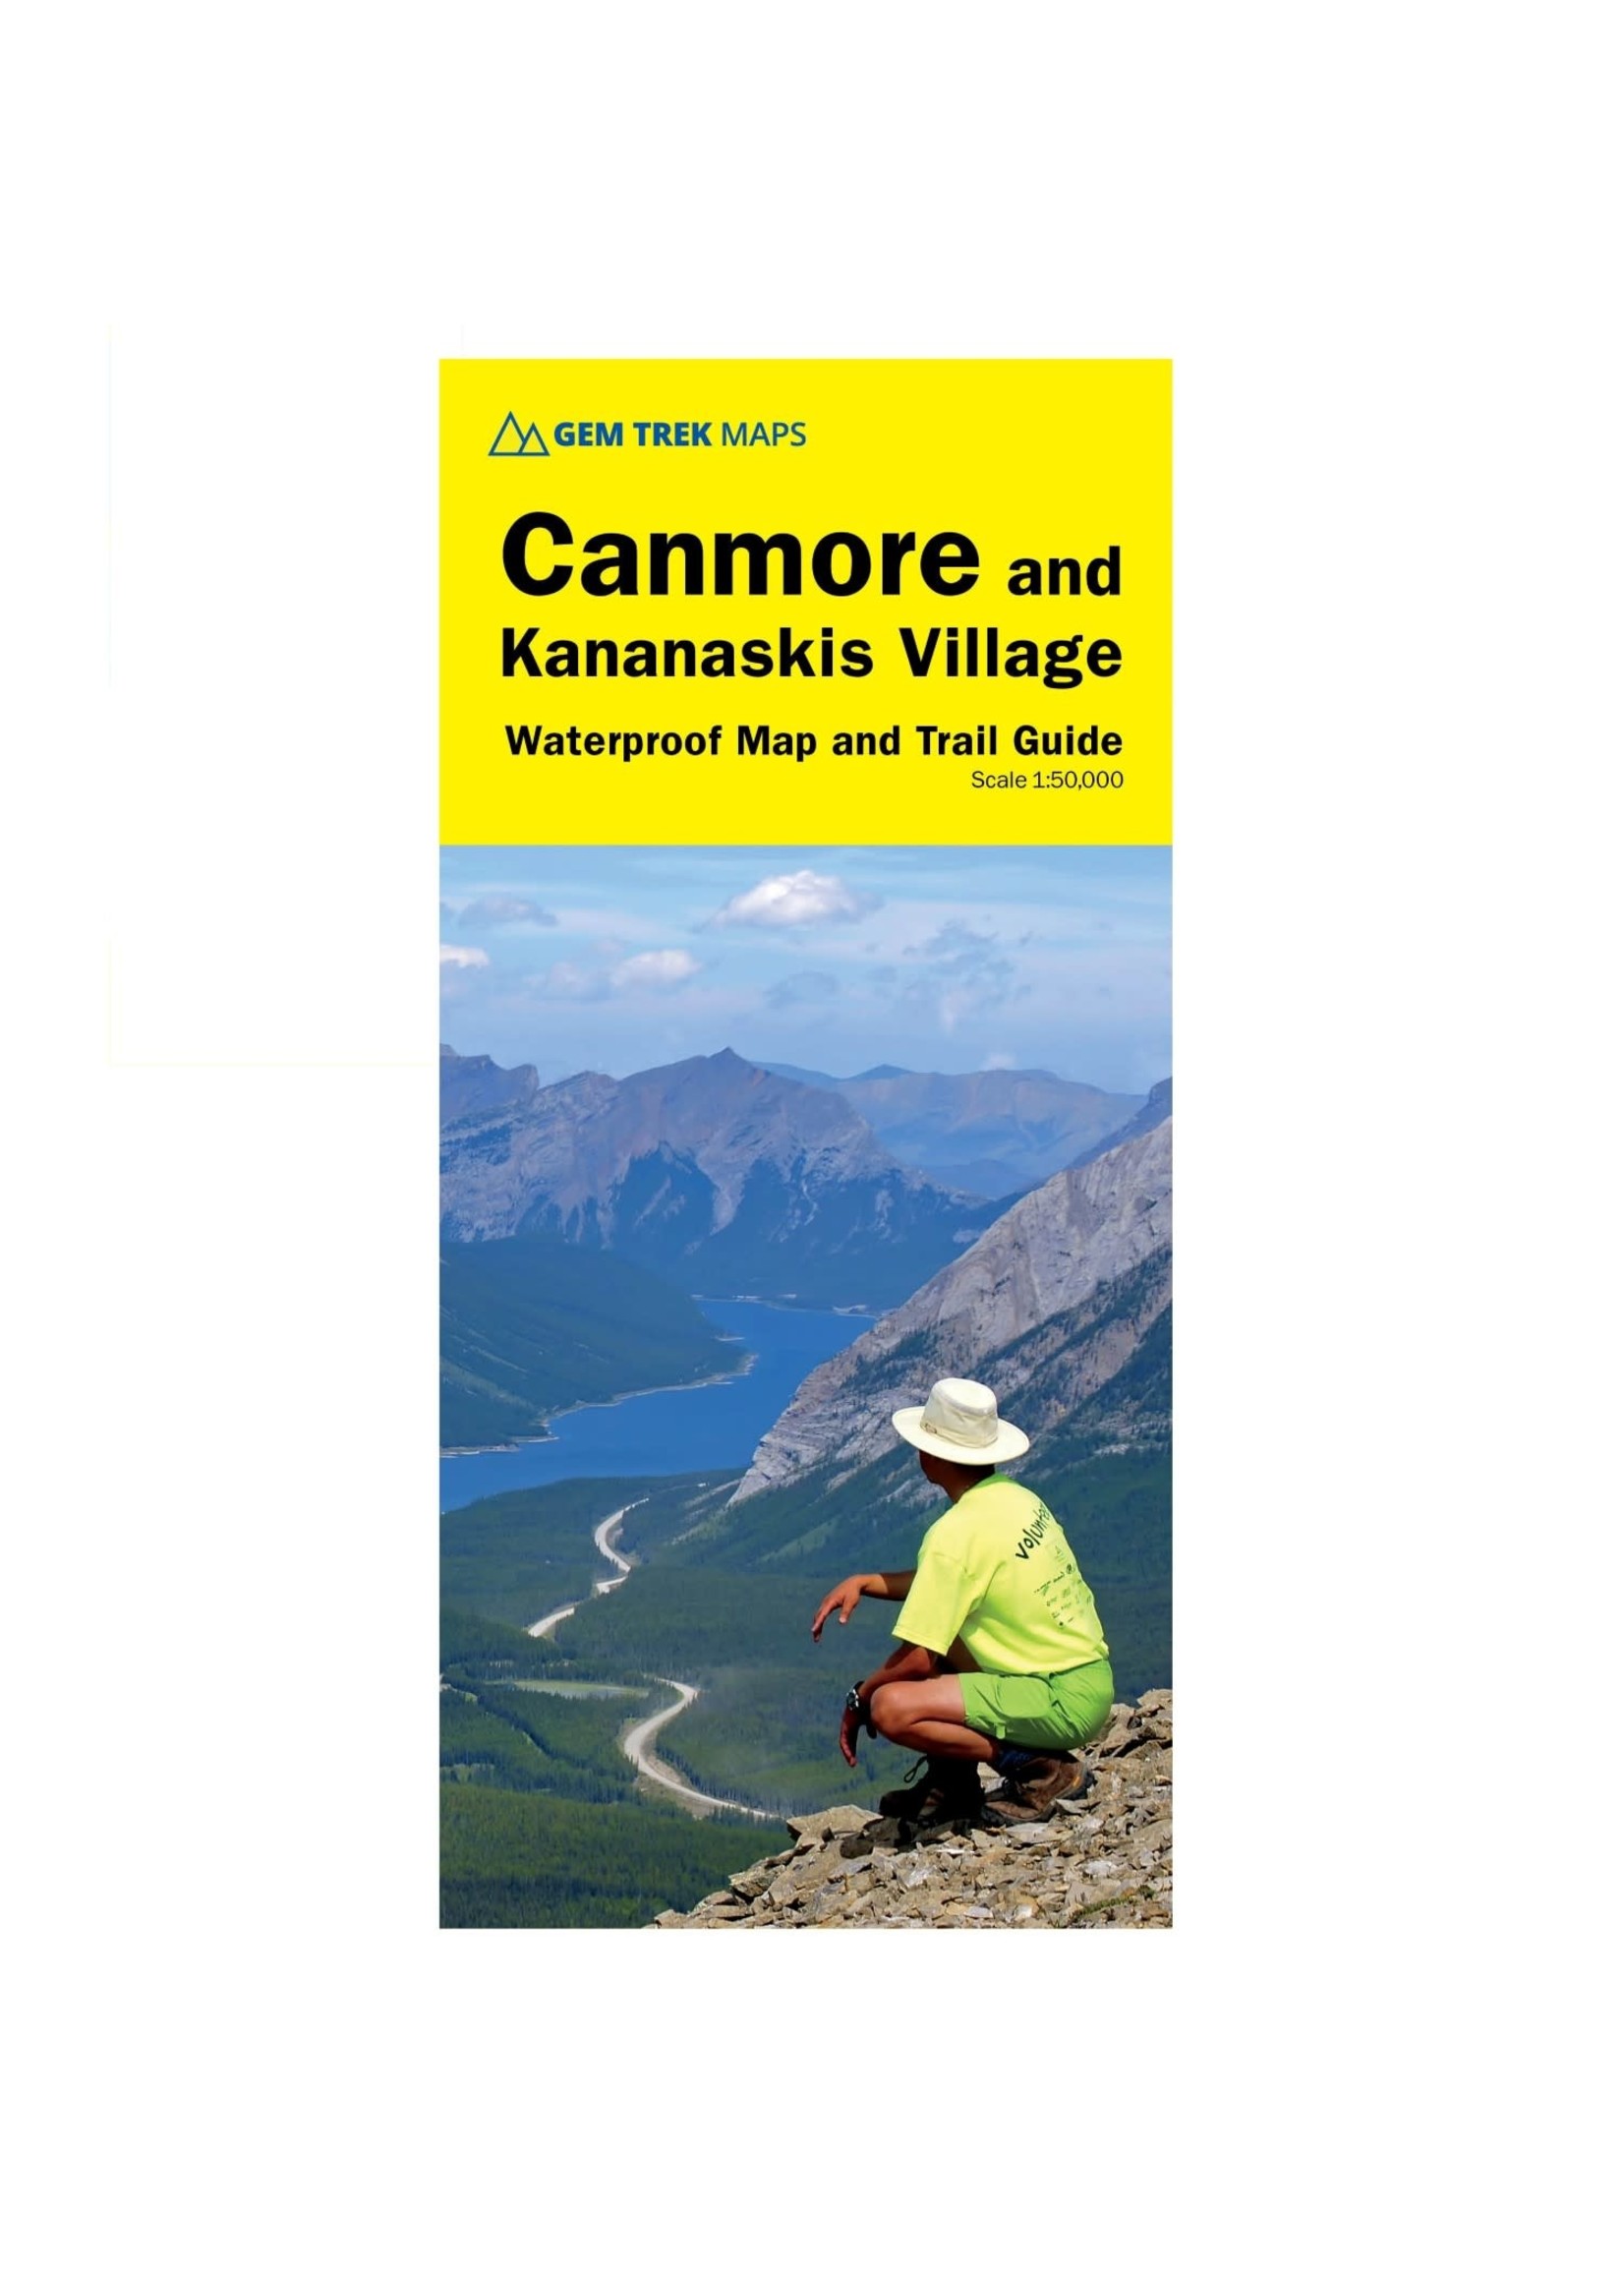 Gemtrek Map Canmore Kananaskis Village